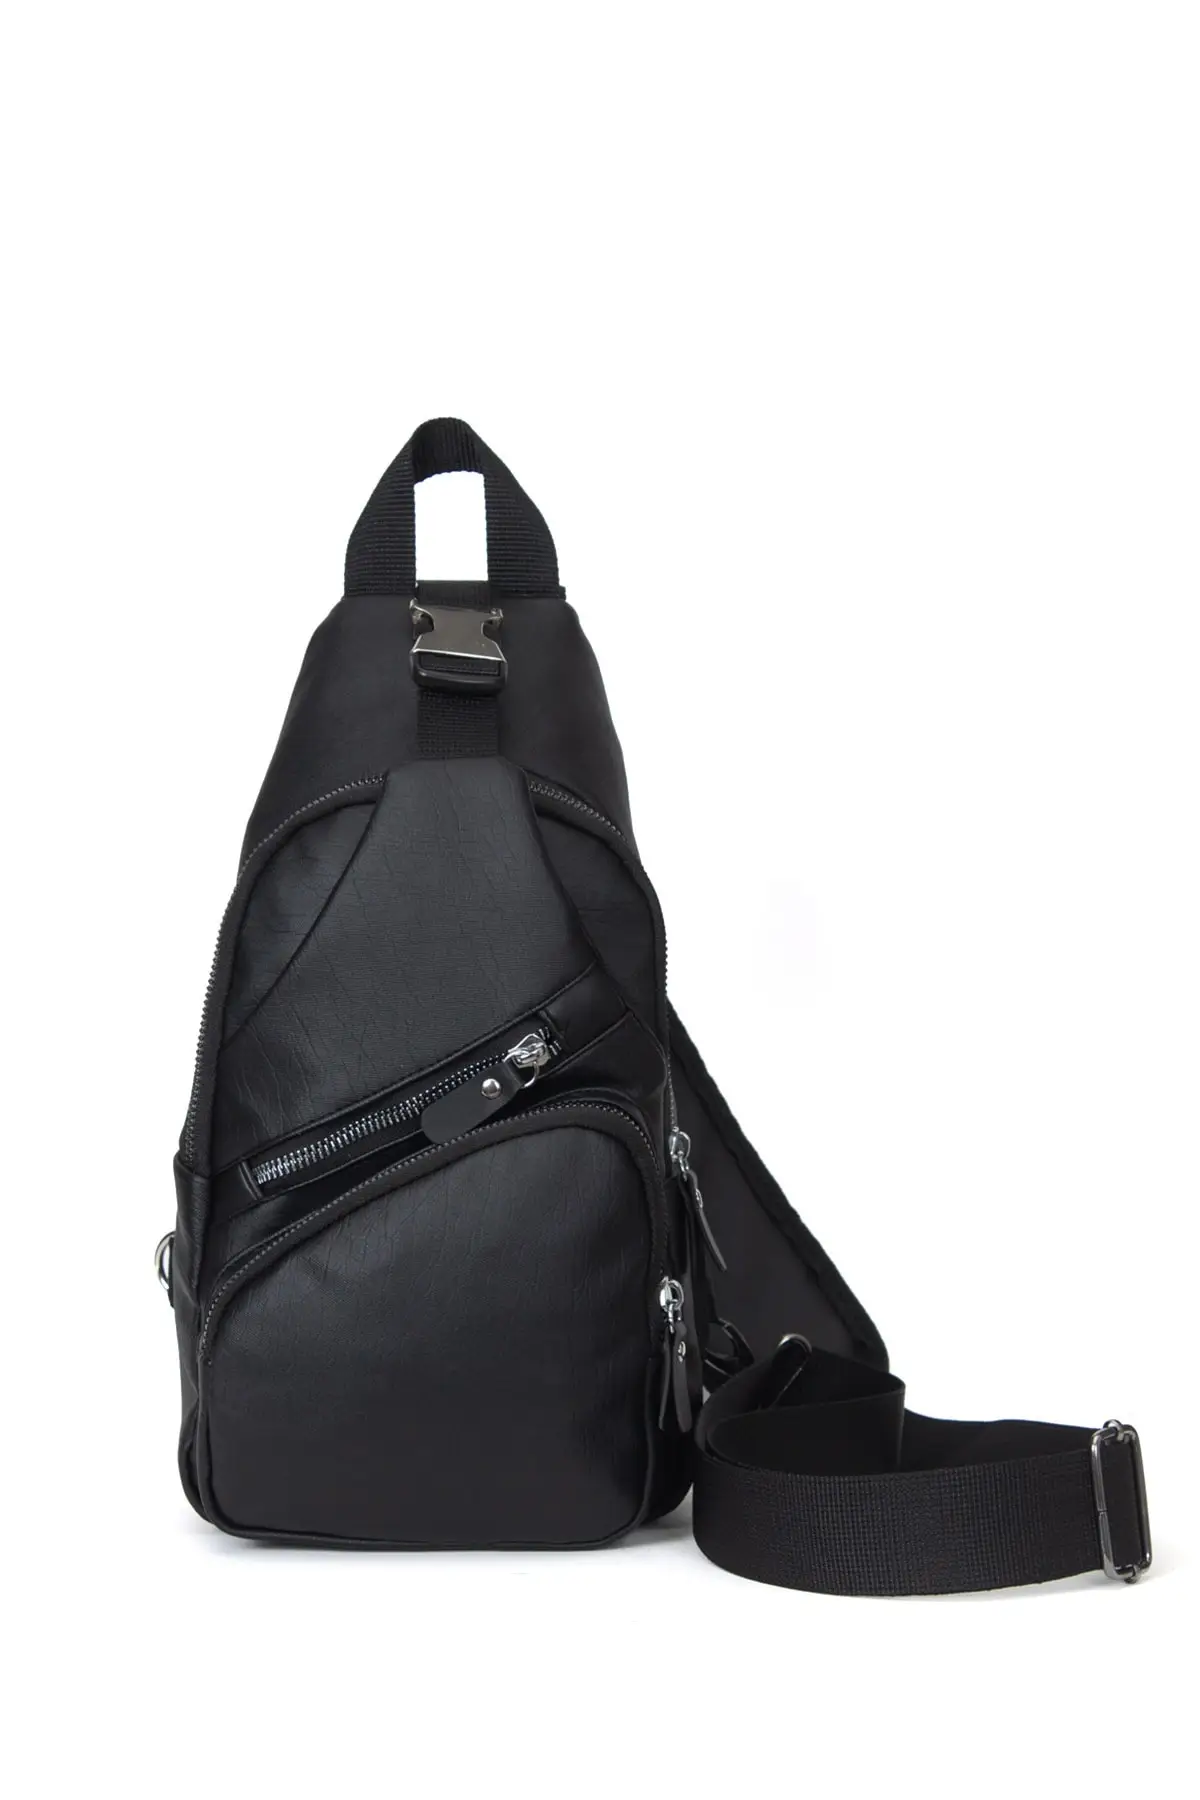 2052, унисекс, черная нагрудная сумка через плечо и спина, женская сумка, рюкзак, женская сумка, женская кожаная сумка для покупок